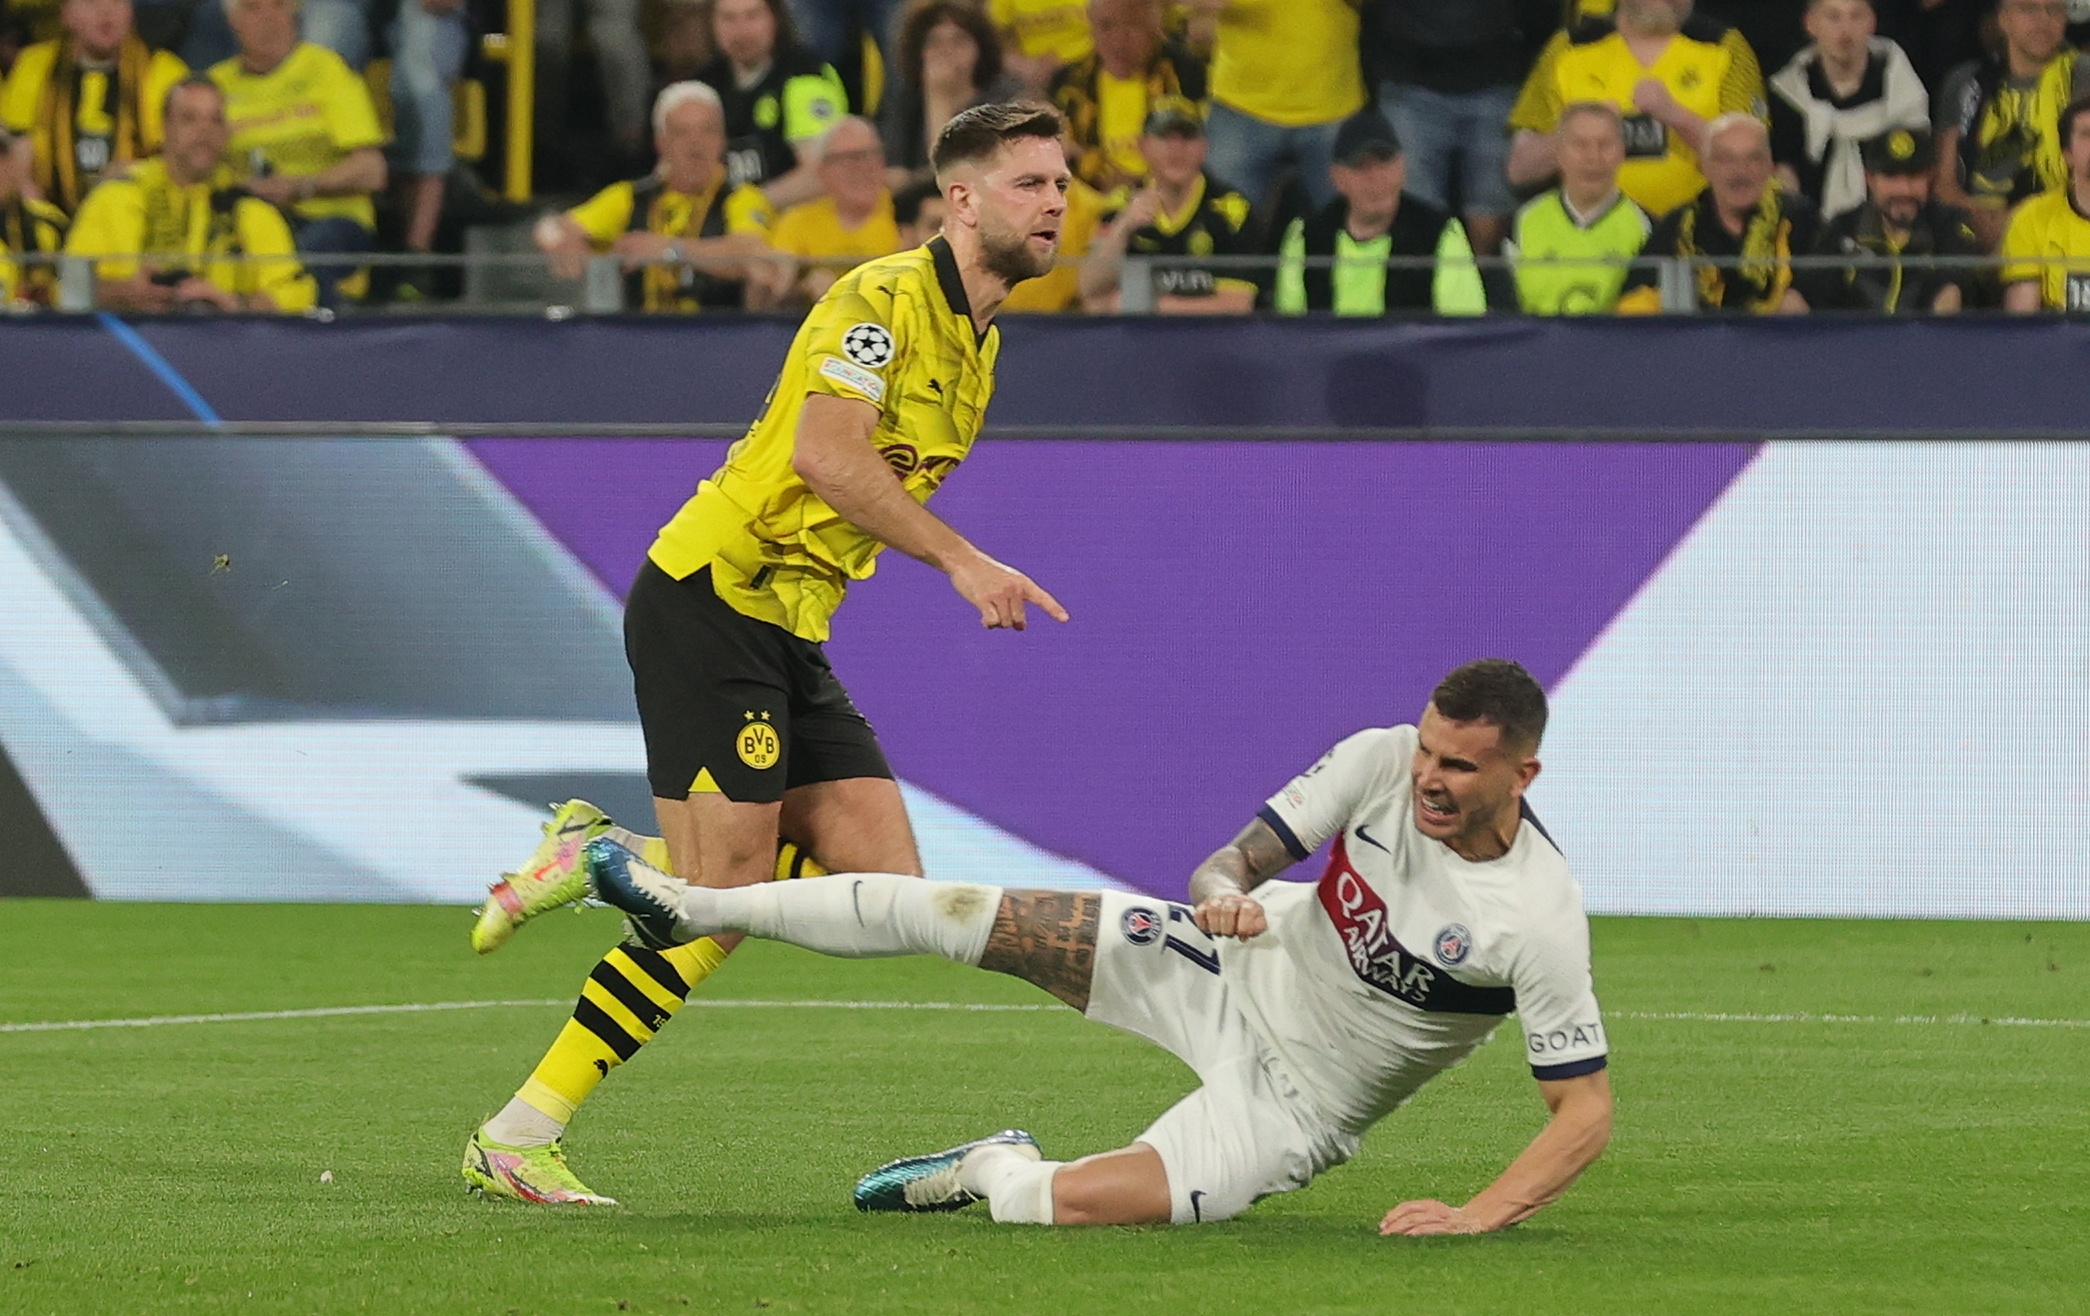 El Borussia Dortmund golpea primero ante el PSG en la Champions (1-0)